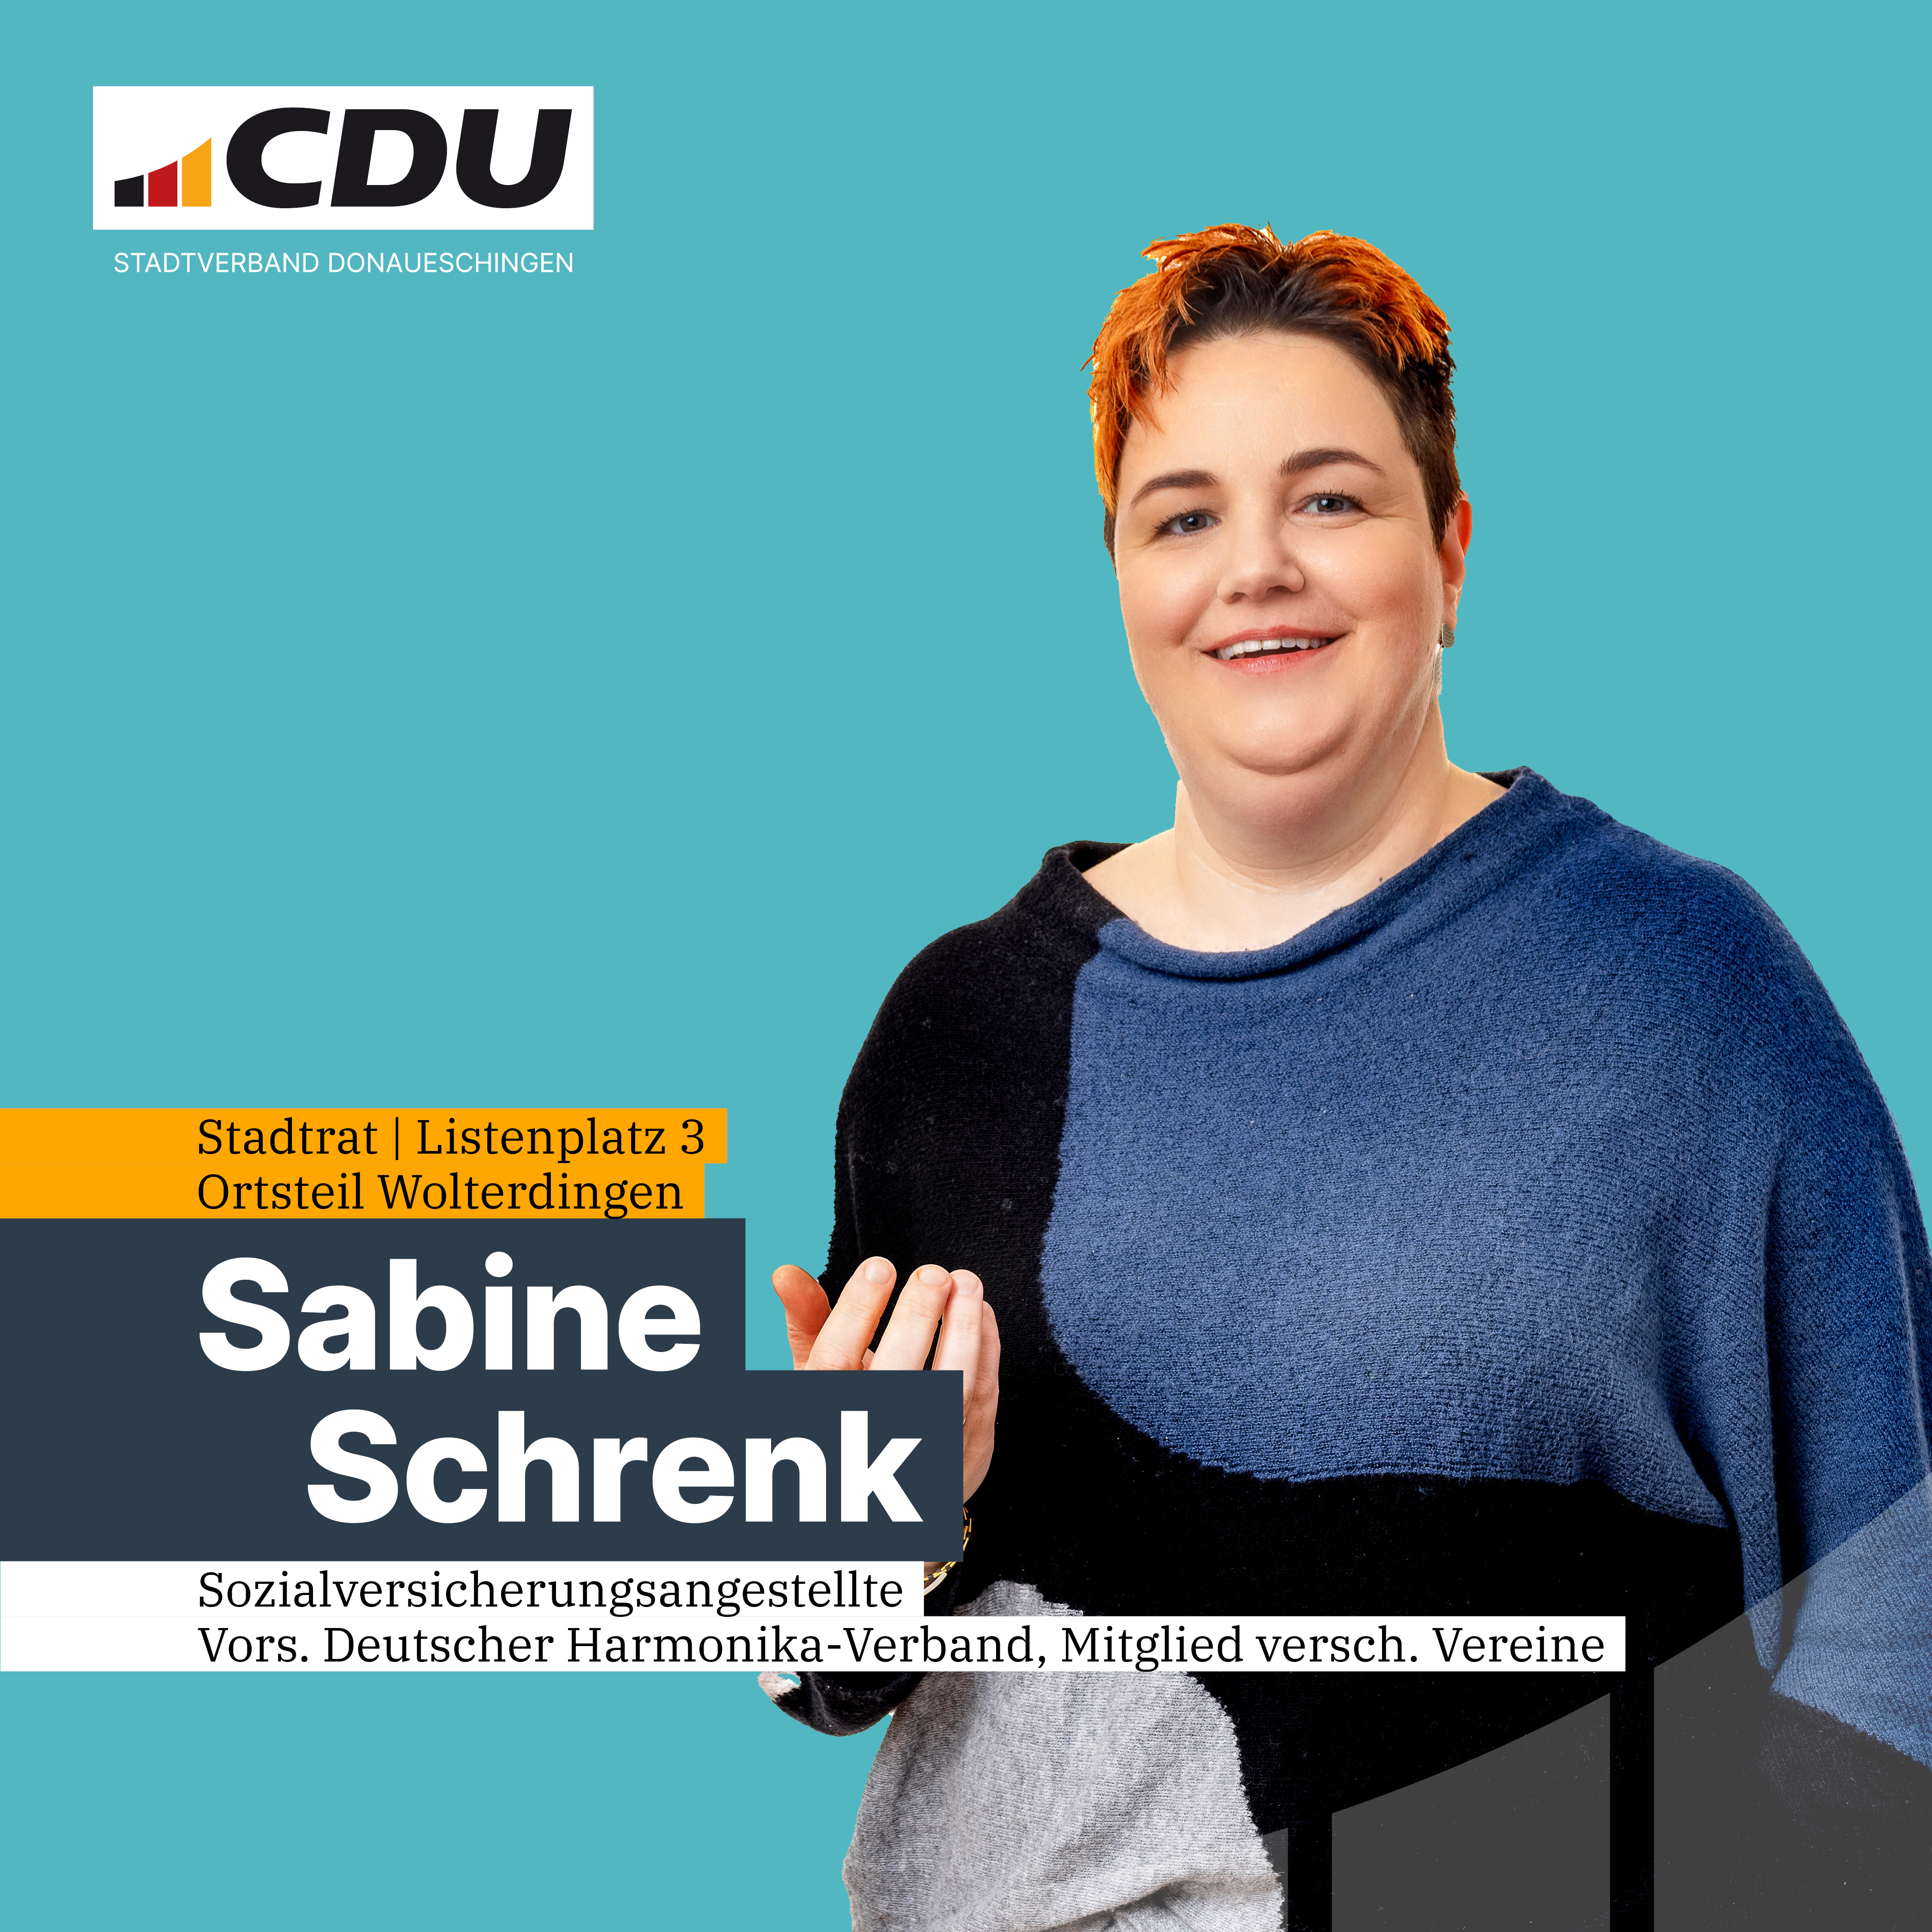  Sabine Schrenk